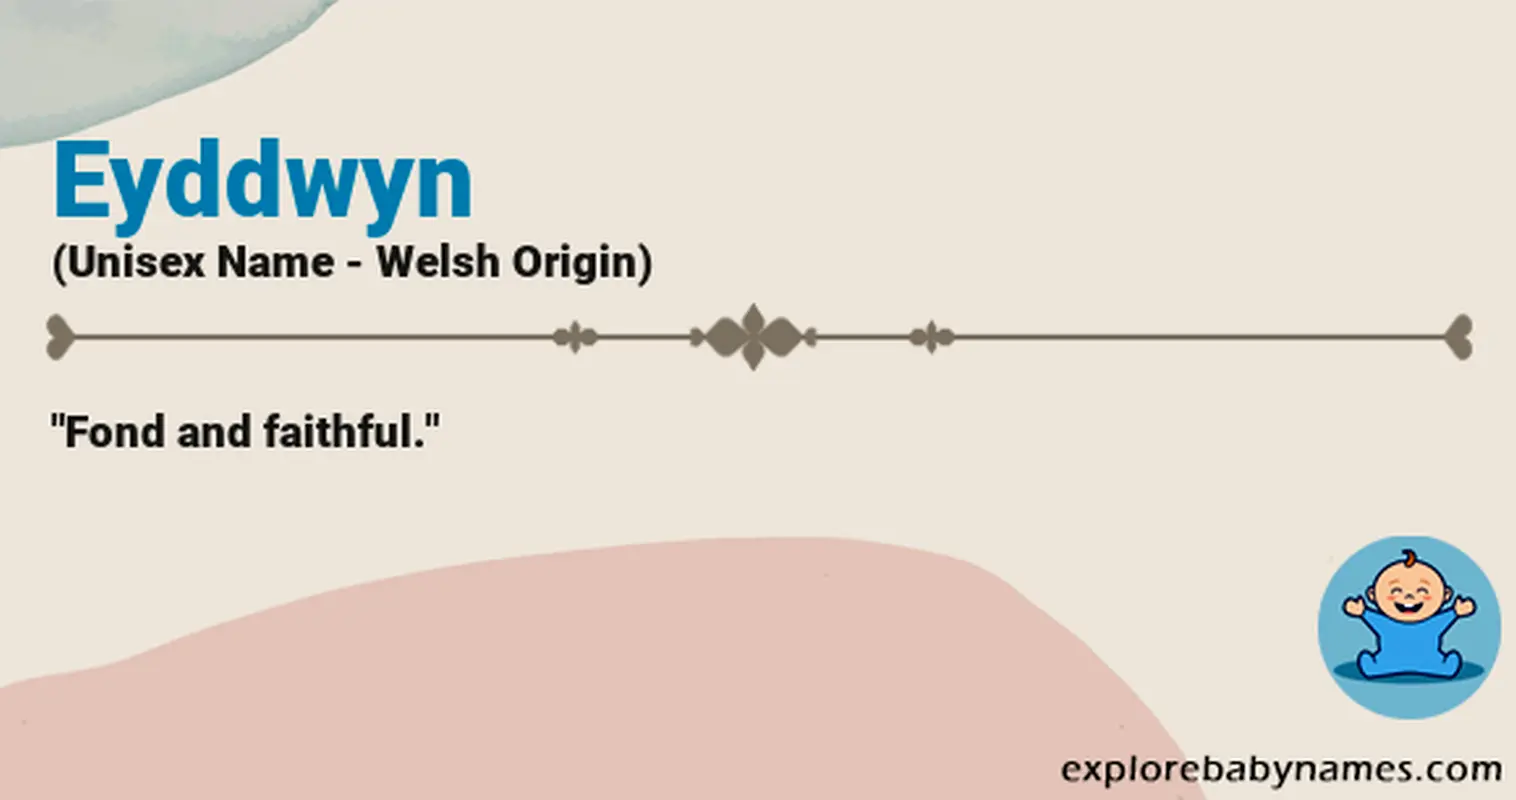 Meaning of Eyddwyn